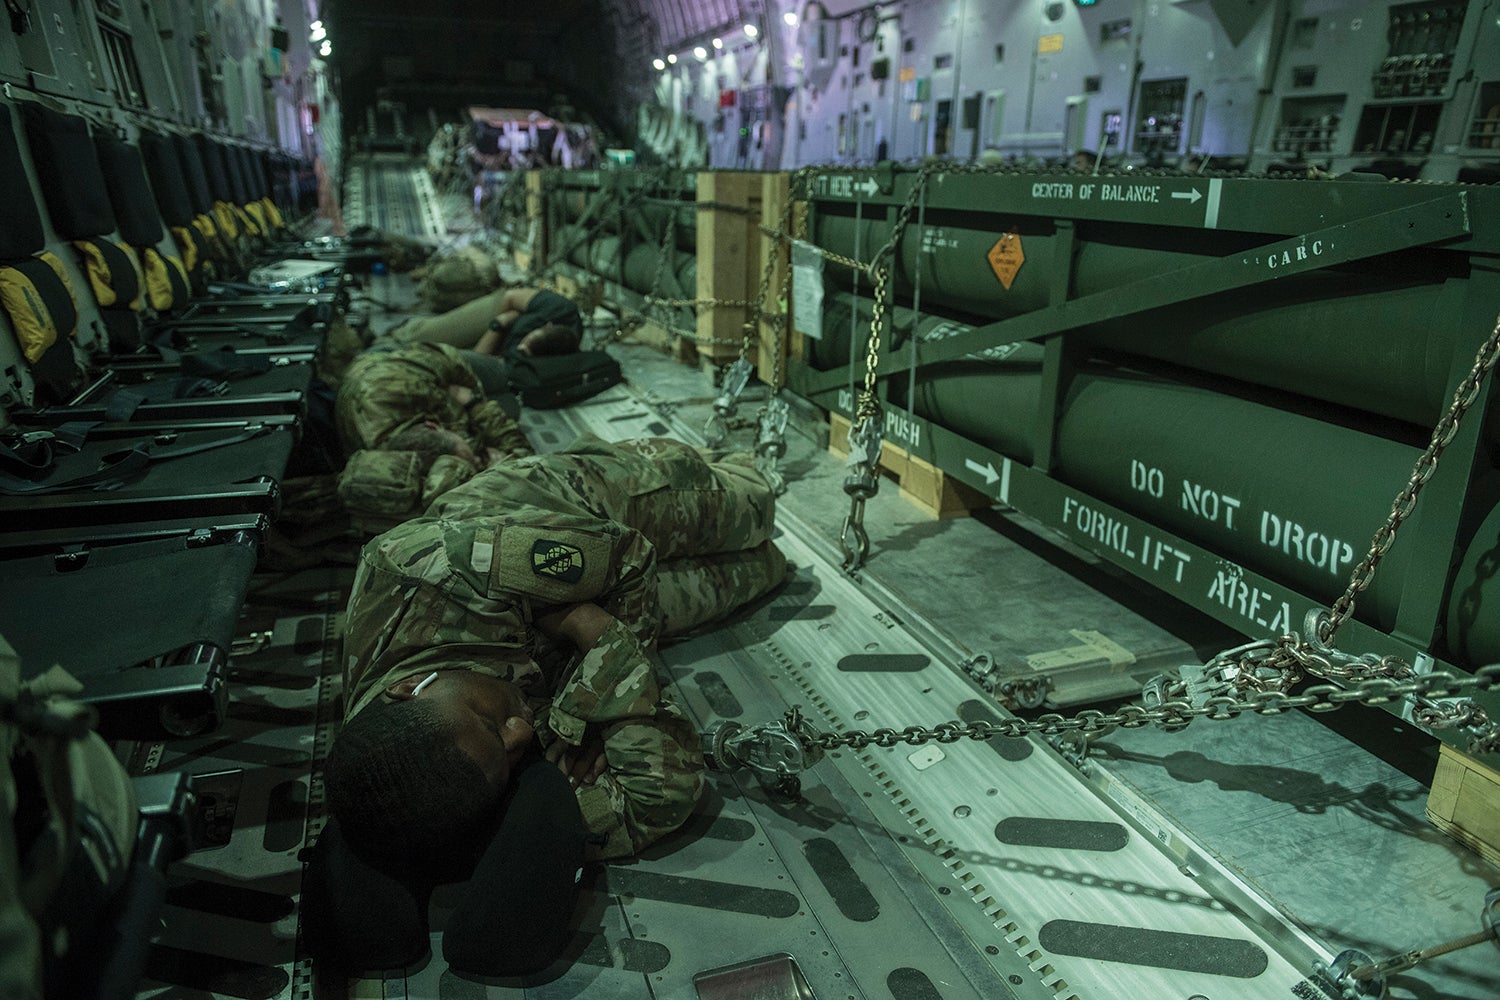 Soldiers sleeping